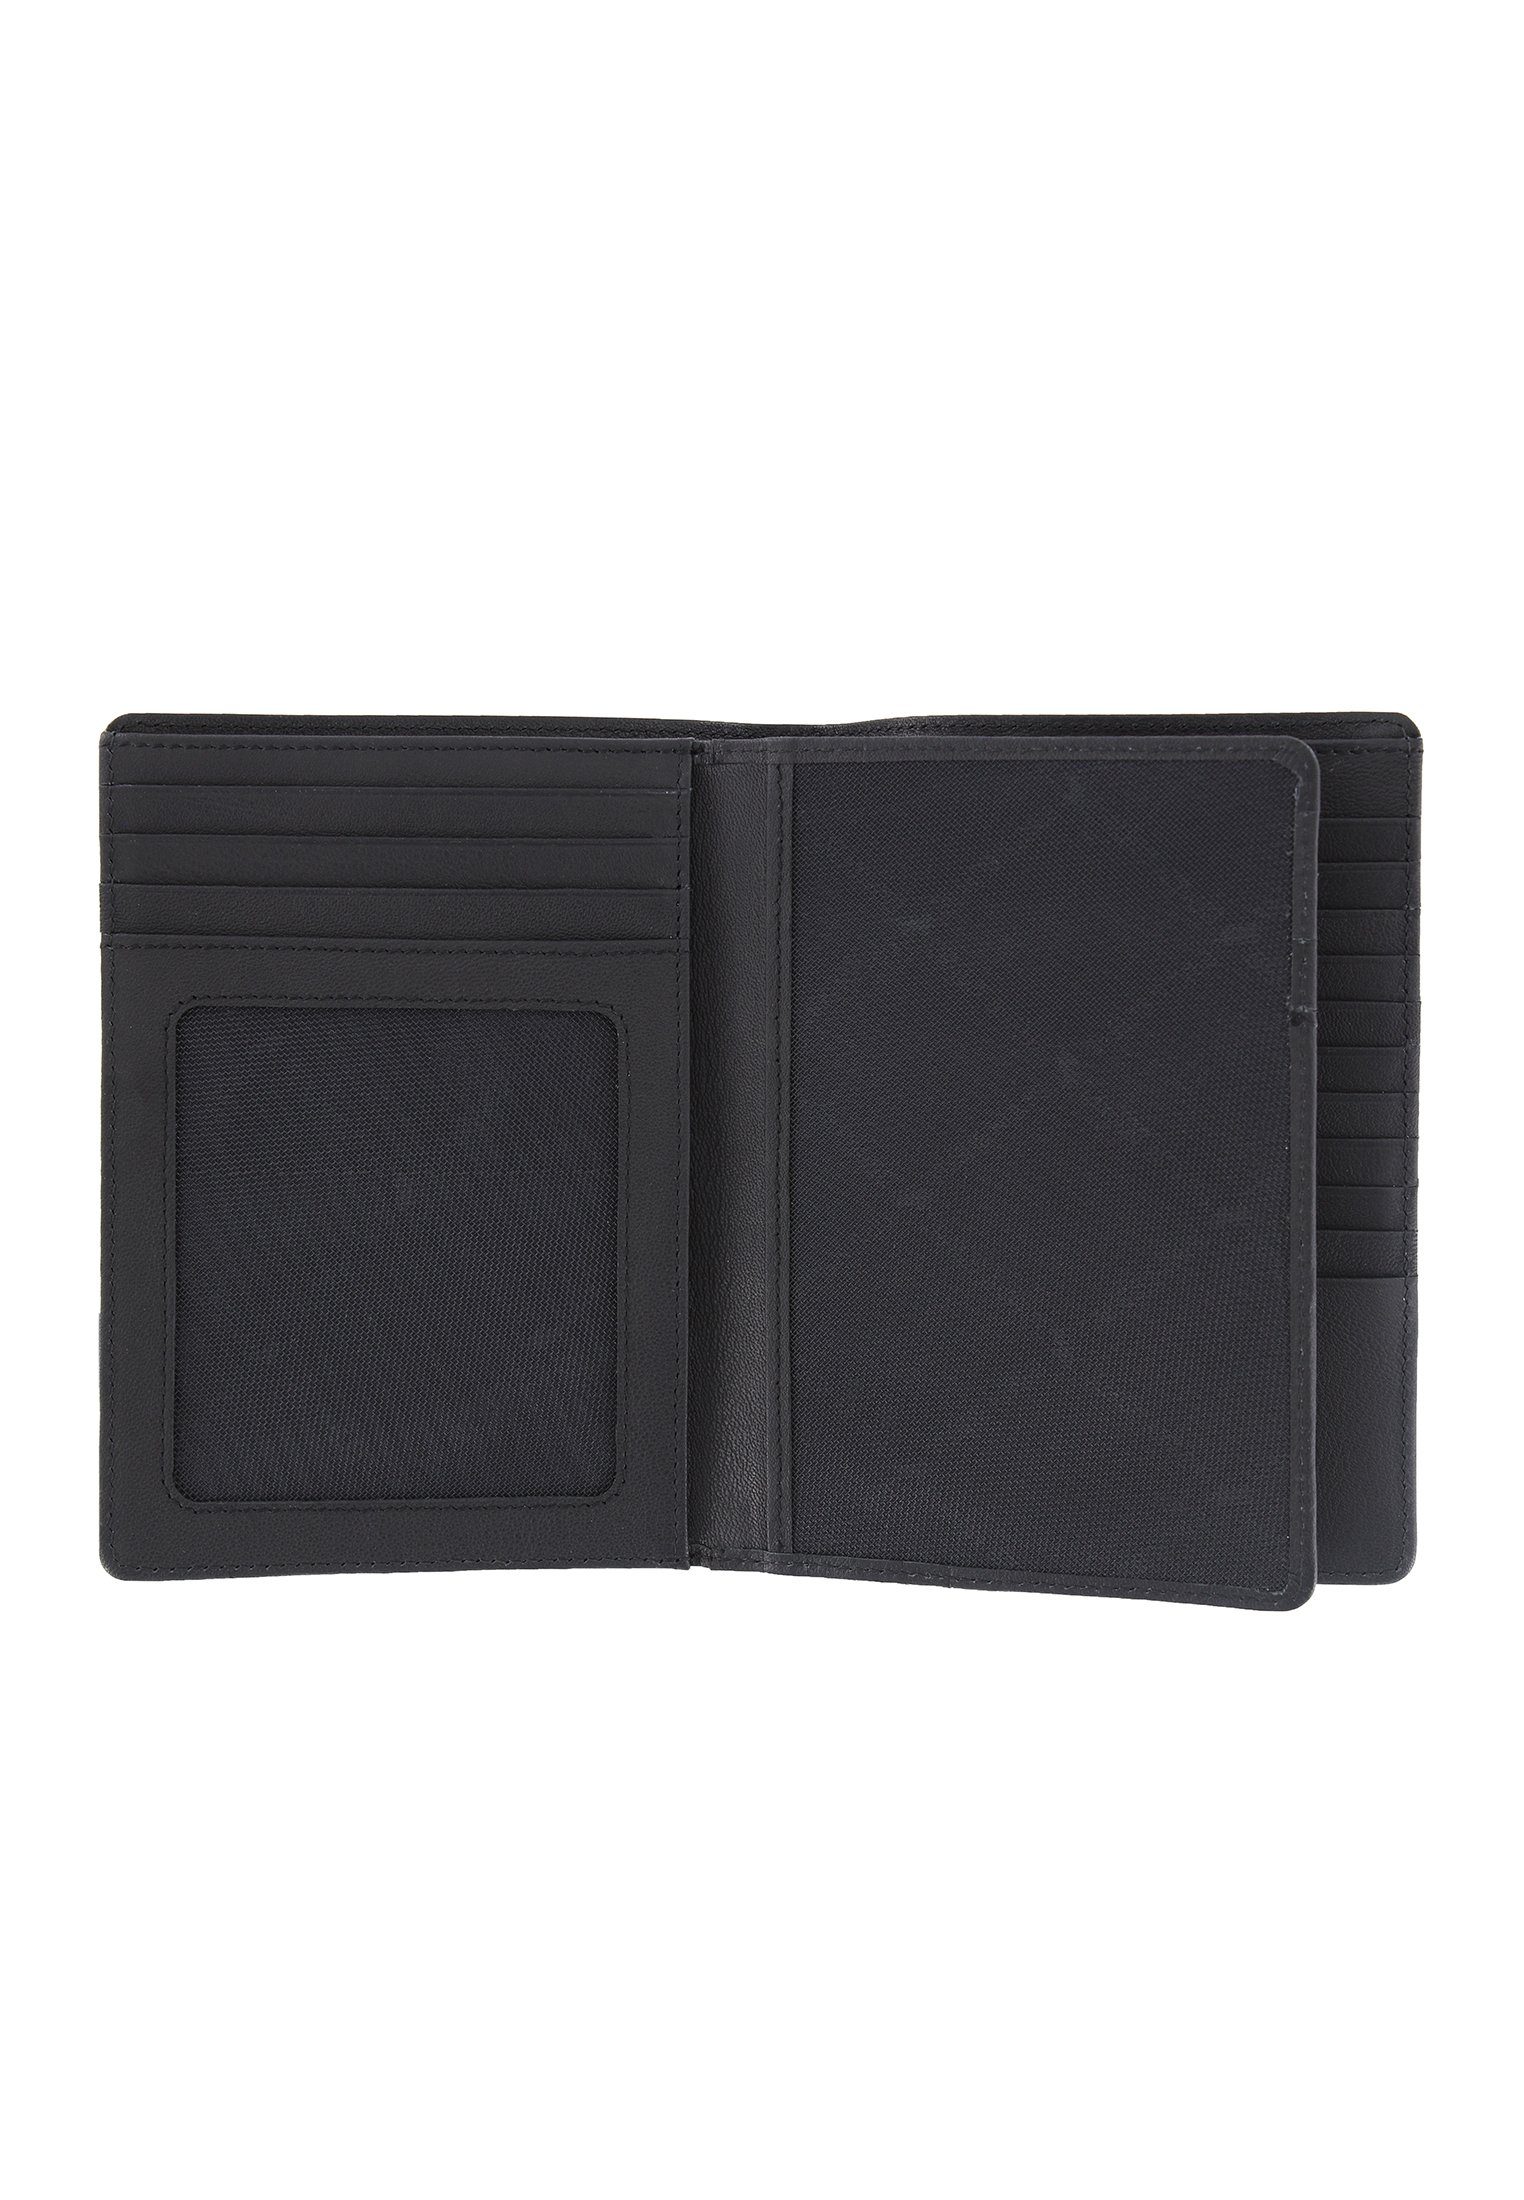 in schwarz, viel Germany Stauraum, ARIZONA 20CS Made Braun Brieftasche 2.0 Büffel Brieftasche mit